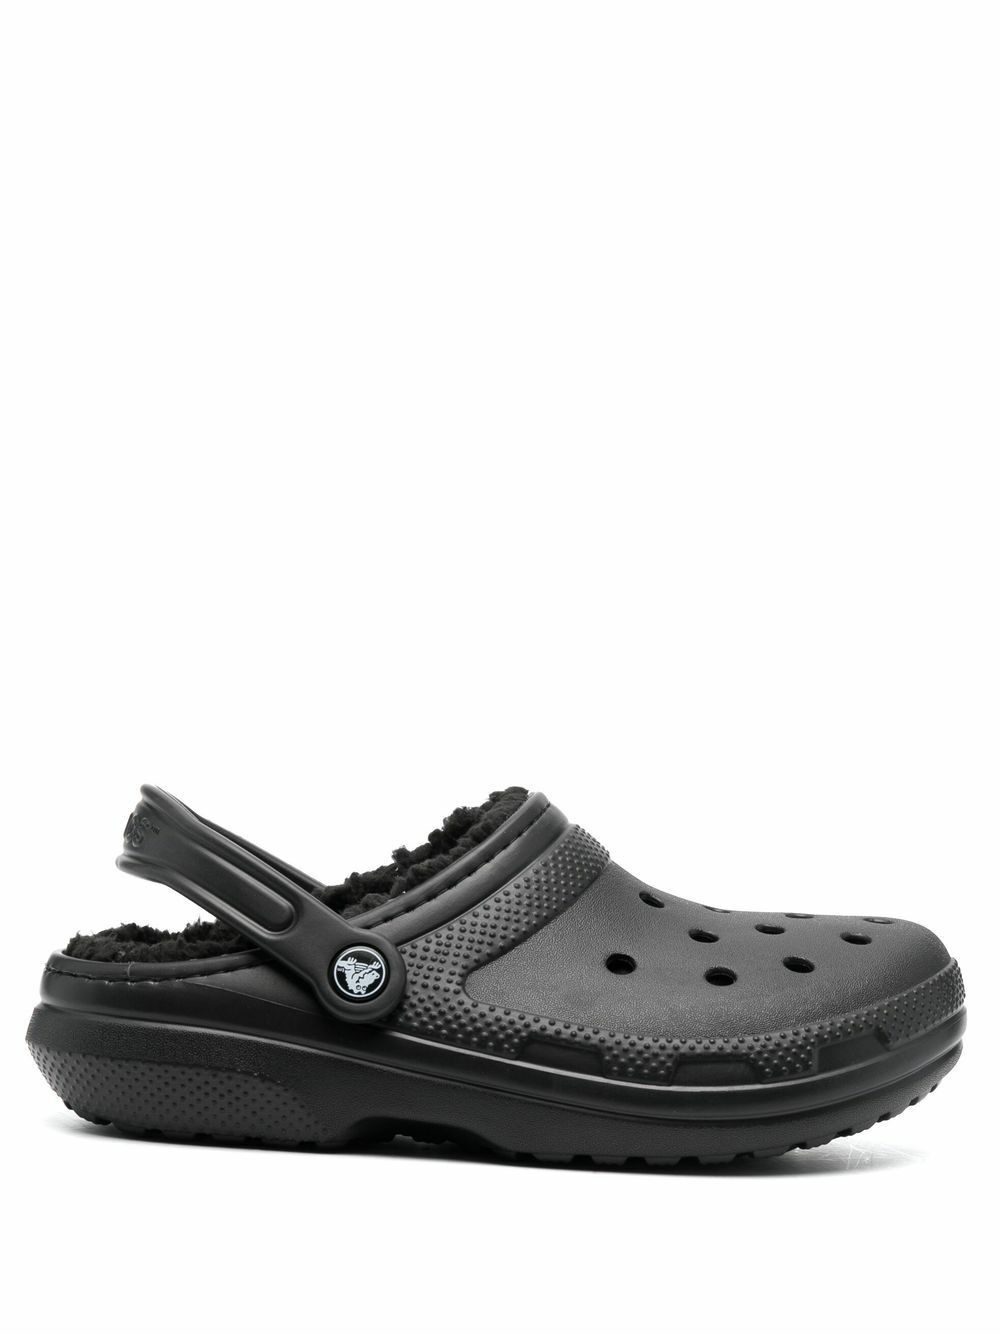 CROCS - Classic Lined Clog Sandals Crocs